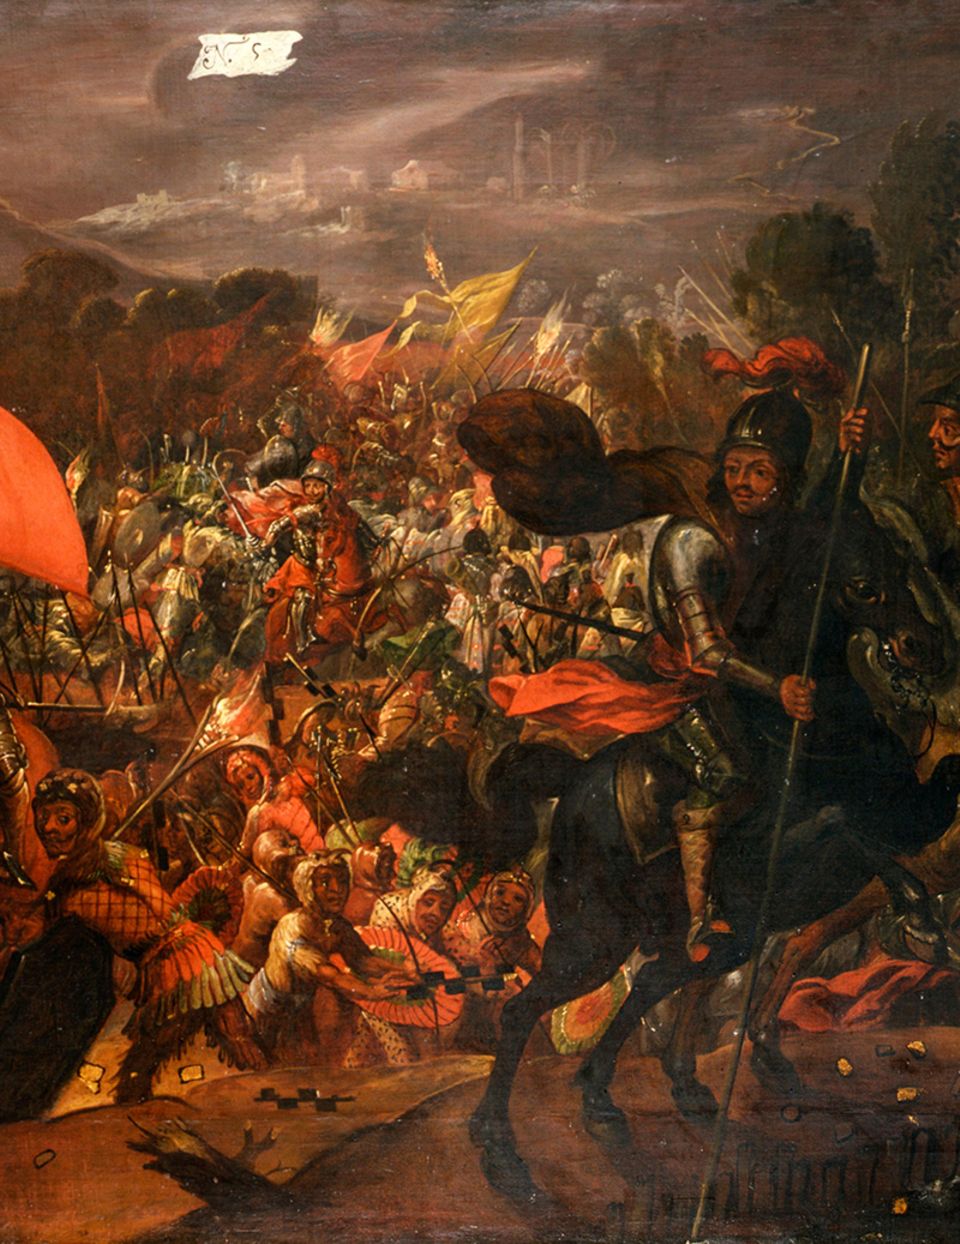 Eroberung des Aztekenreichs: Beim Versuch, sich den Weg aus Tenochtitlan freizukämpfen, erleiden die Konquistadoren ein militärisches Fiasko. Mitten im Chaos des Rückzugs: Cortés, gleich rechts unterhalb dieser Zeilen – heroisch wie immer